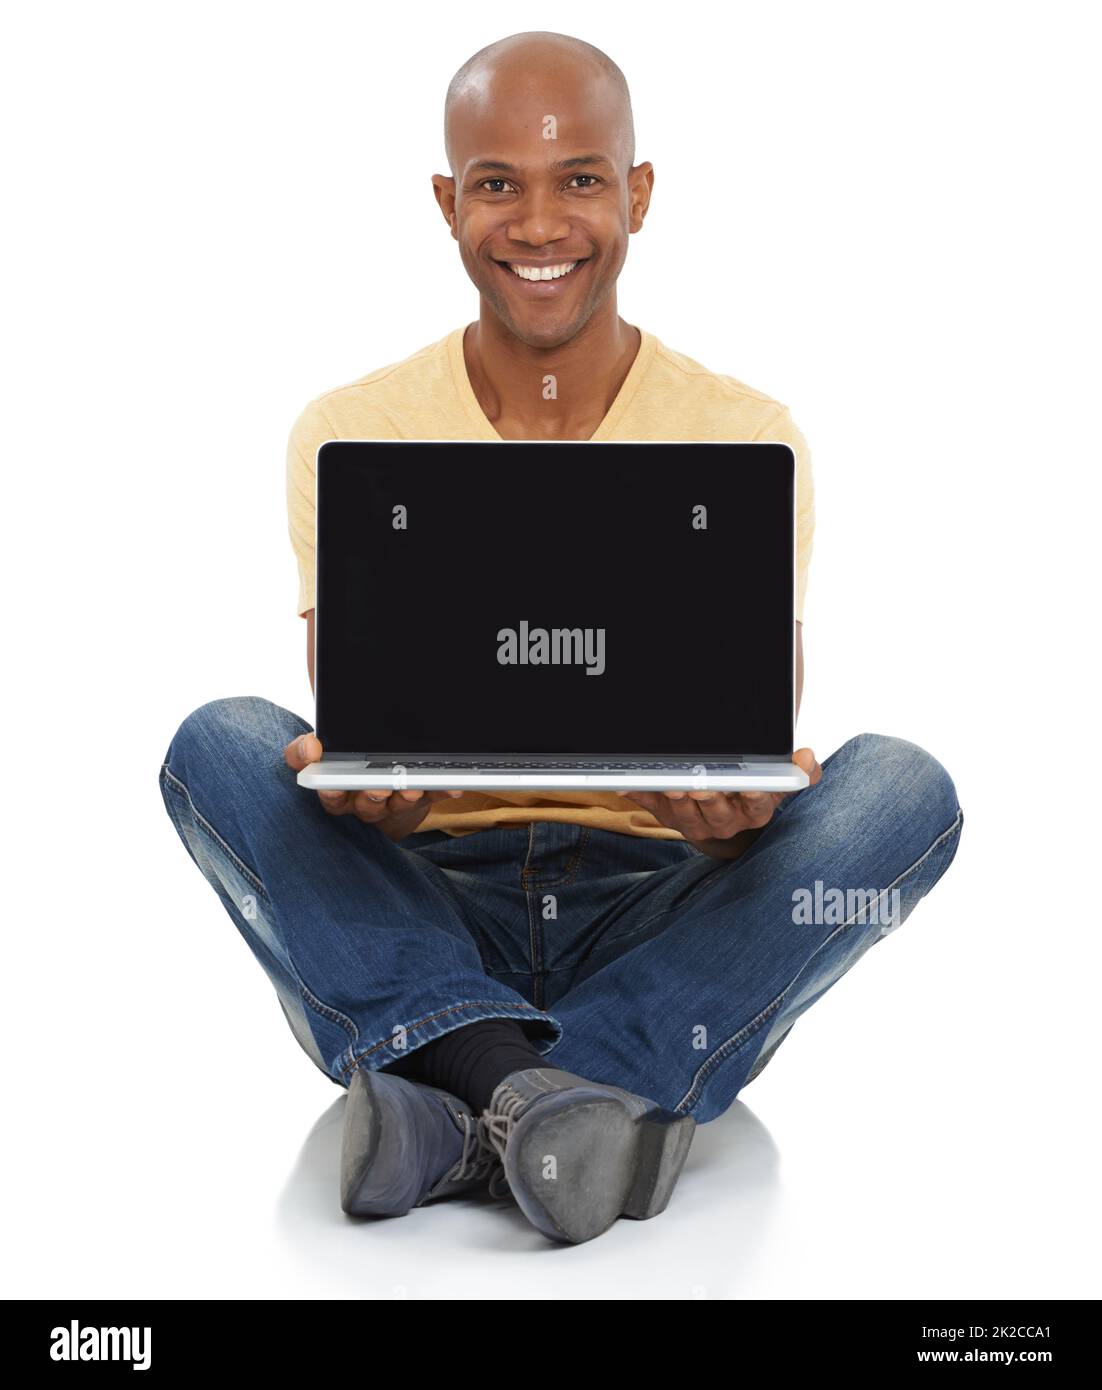 Die Zukunft der Technologie präsentieren. Studio-Aufnahme eines lächelnden afroamerikanischen Mannes, der vor ihm sitzt und einen Laptop hält. Stockfoto